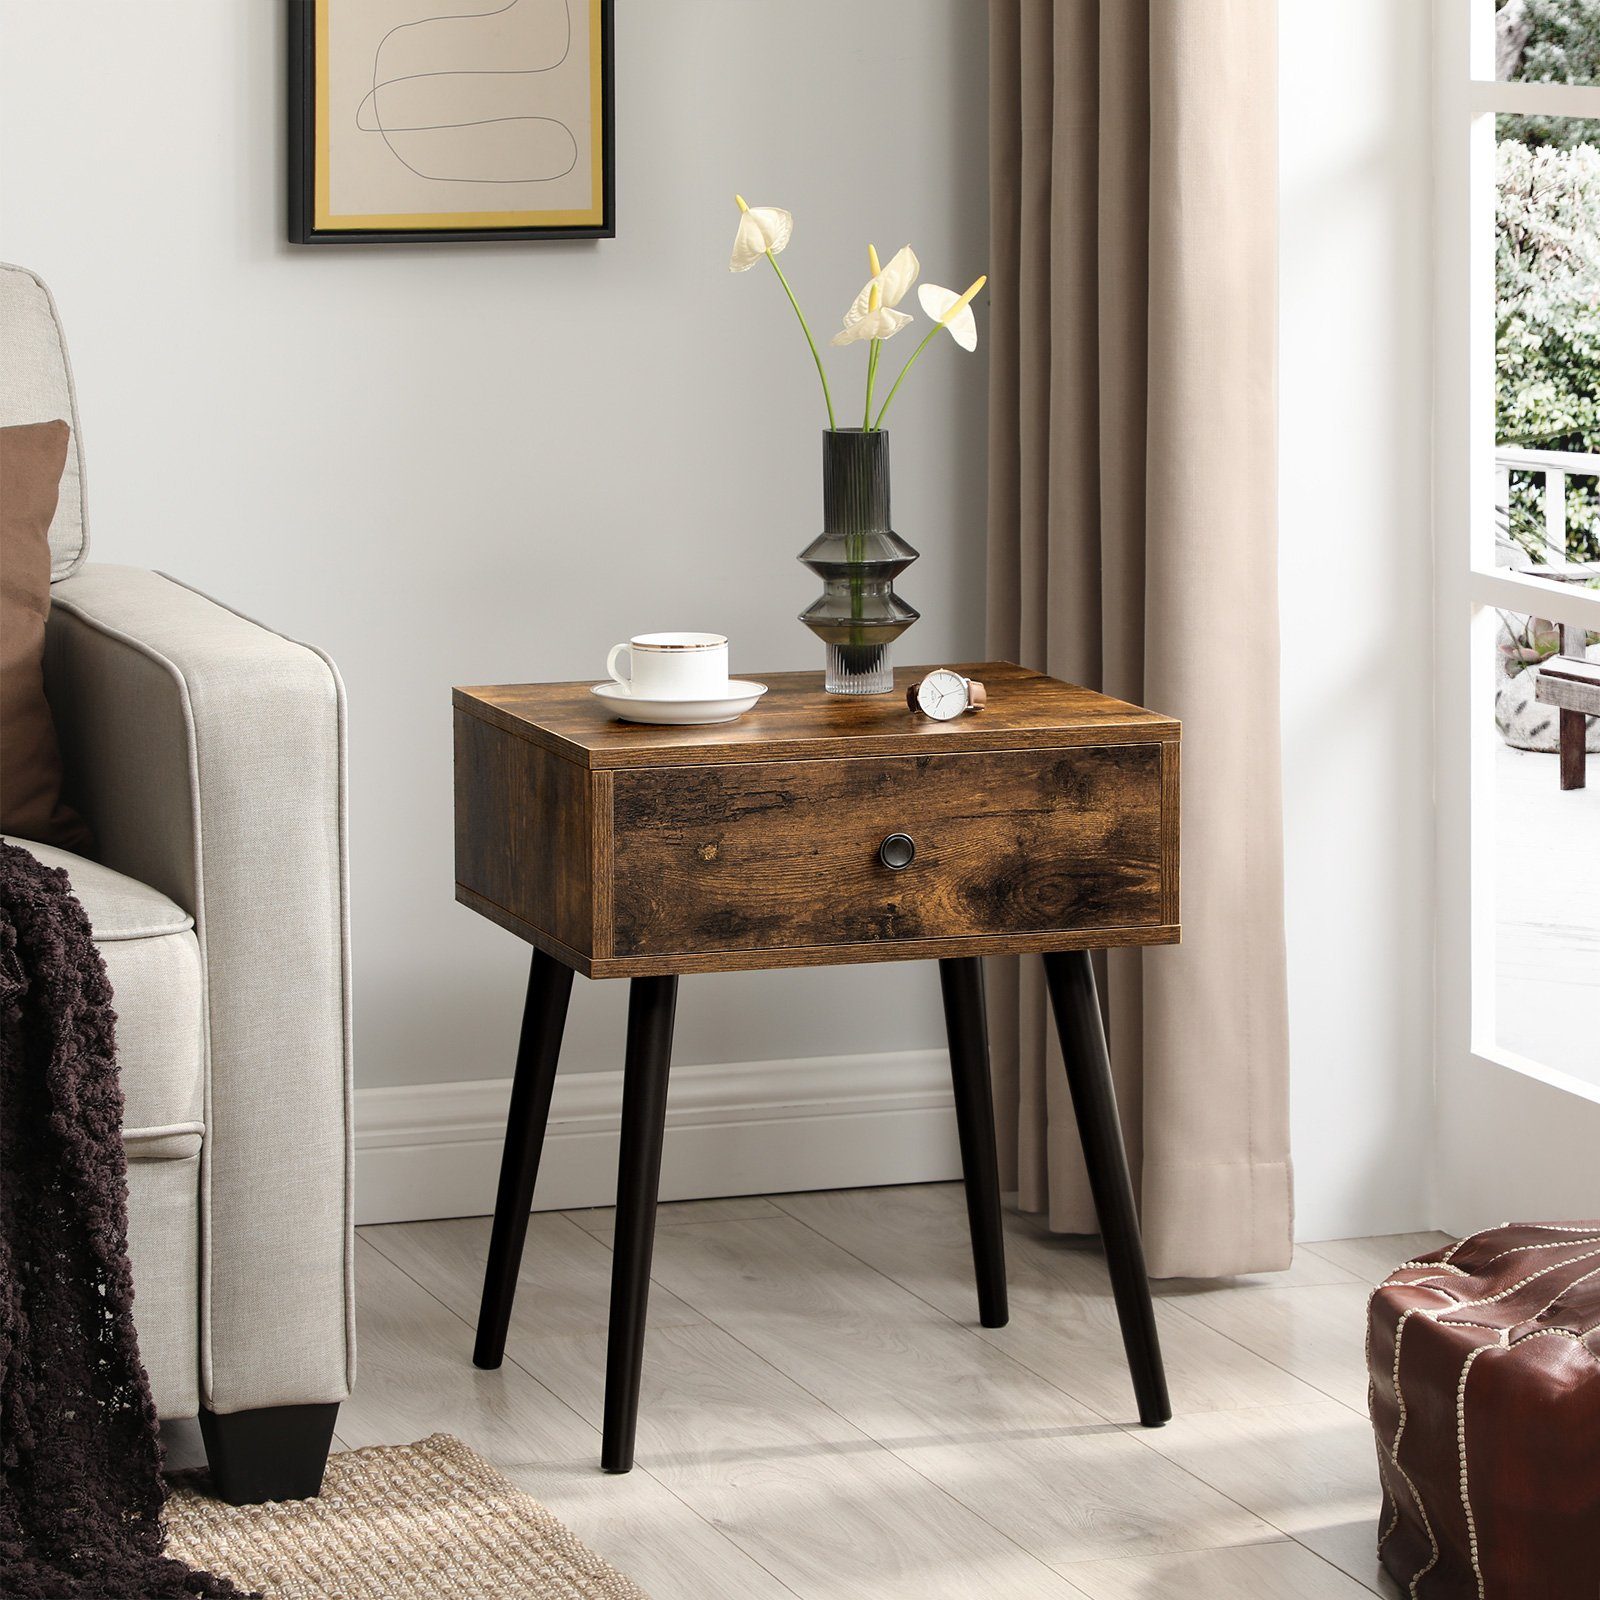 Schlafzimmer 60 x 30 x 60 cm Beistelltisch konsolentisch schmal mit Ablage Nachttisch Weiss mit Stauraum für Wohnzimmer